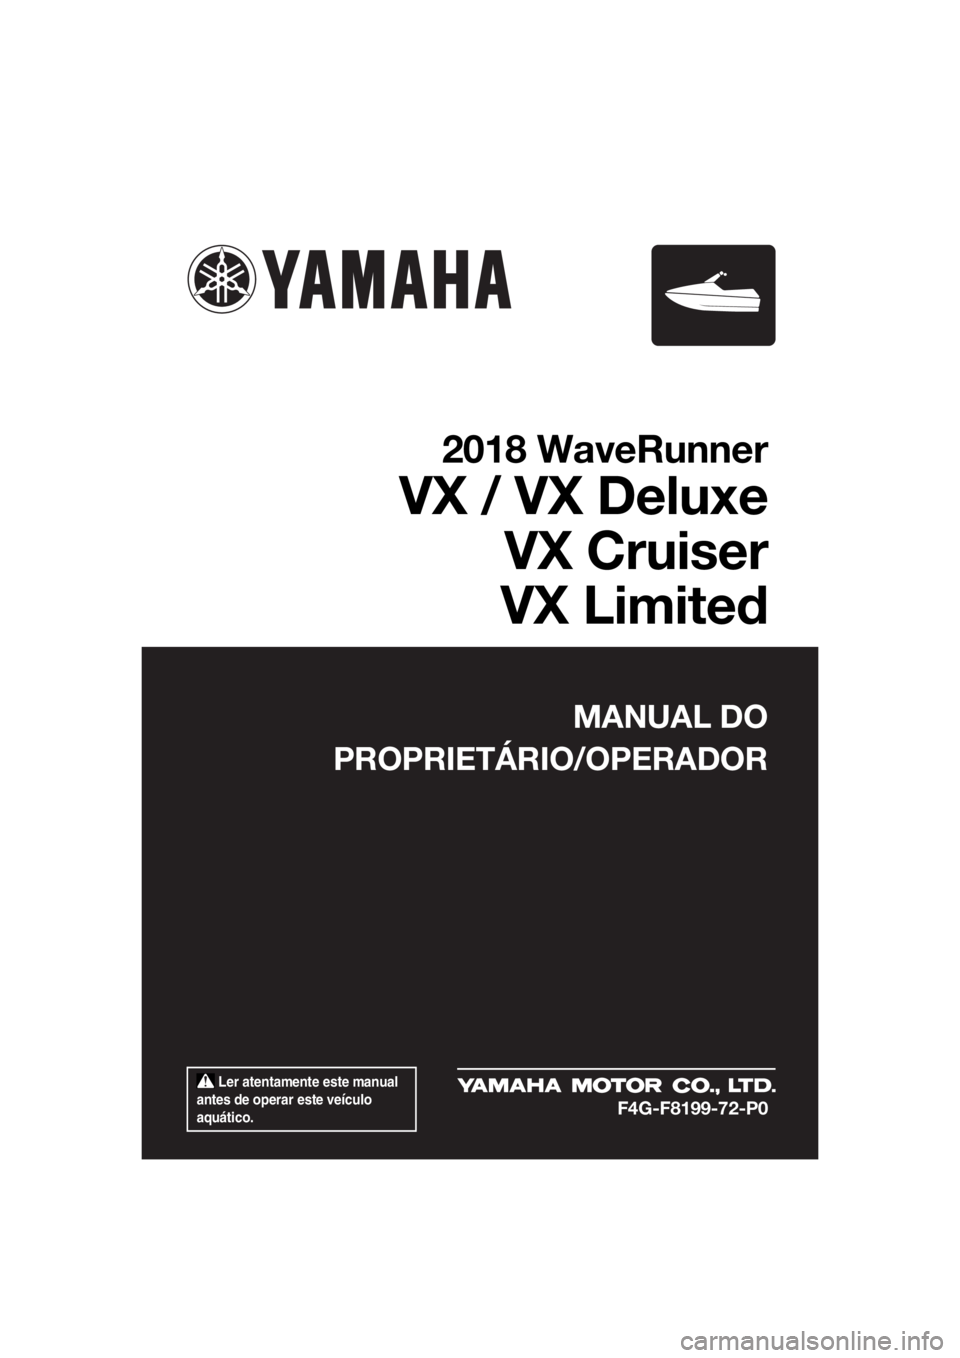 YAMAHA VX 2018  Manual de utilização (in Portuguese)  Ler atentamente este manual 
antes de operar este veículo 
aquático.
MANUAL DO
PROPRIETÁRIO/OPERADOR
2018 WaveRunner
VX / VX Deluxe
VX Cruiser
VX Limited
F4G-F8199-72-P0
UF4G72P0.book  Page 1  Mon